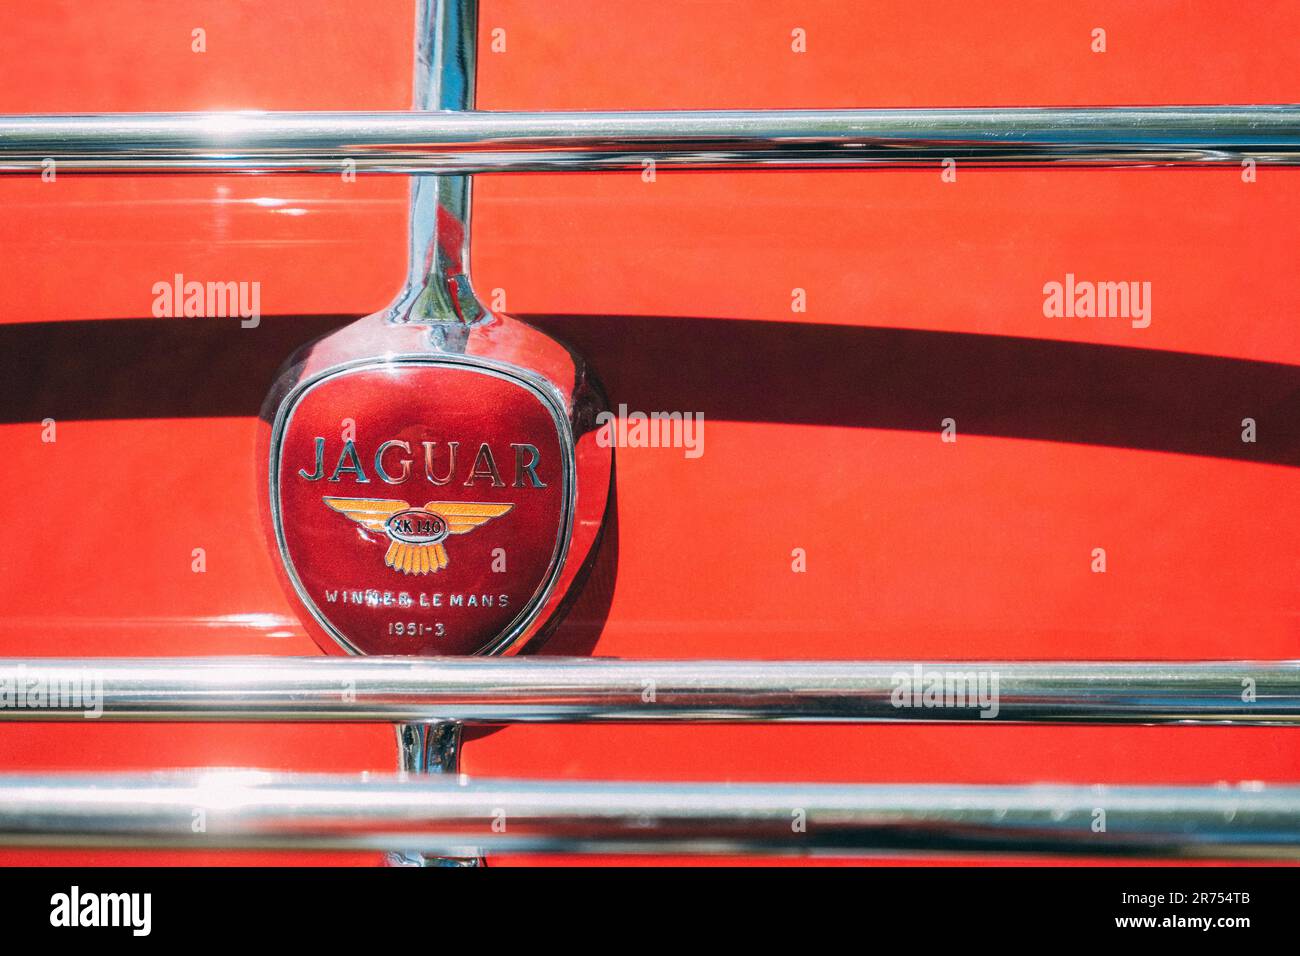 Séville, Espagne - 12 avril 2023 : vainqueur de la Jaguar 1951-3 le Mans rouge logo auto britannique sur le fond rouge de la vieille voiture vintage avec des barres chromées en S. Banque D'Images